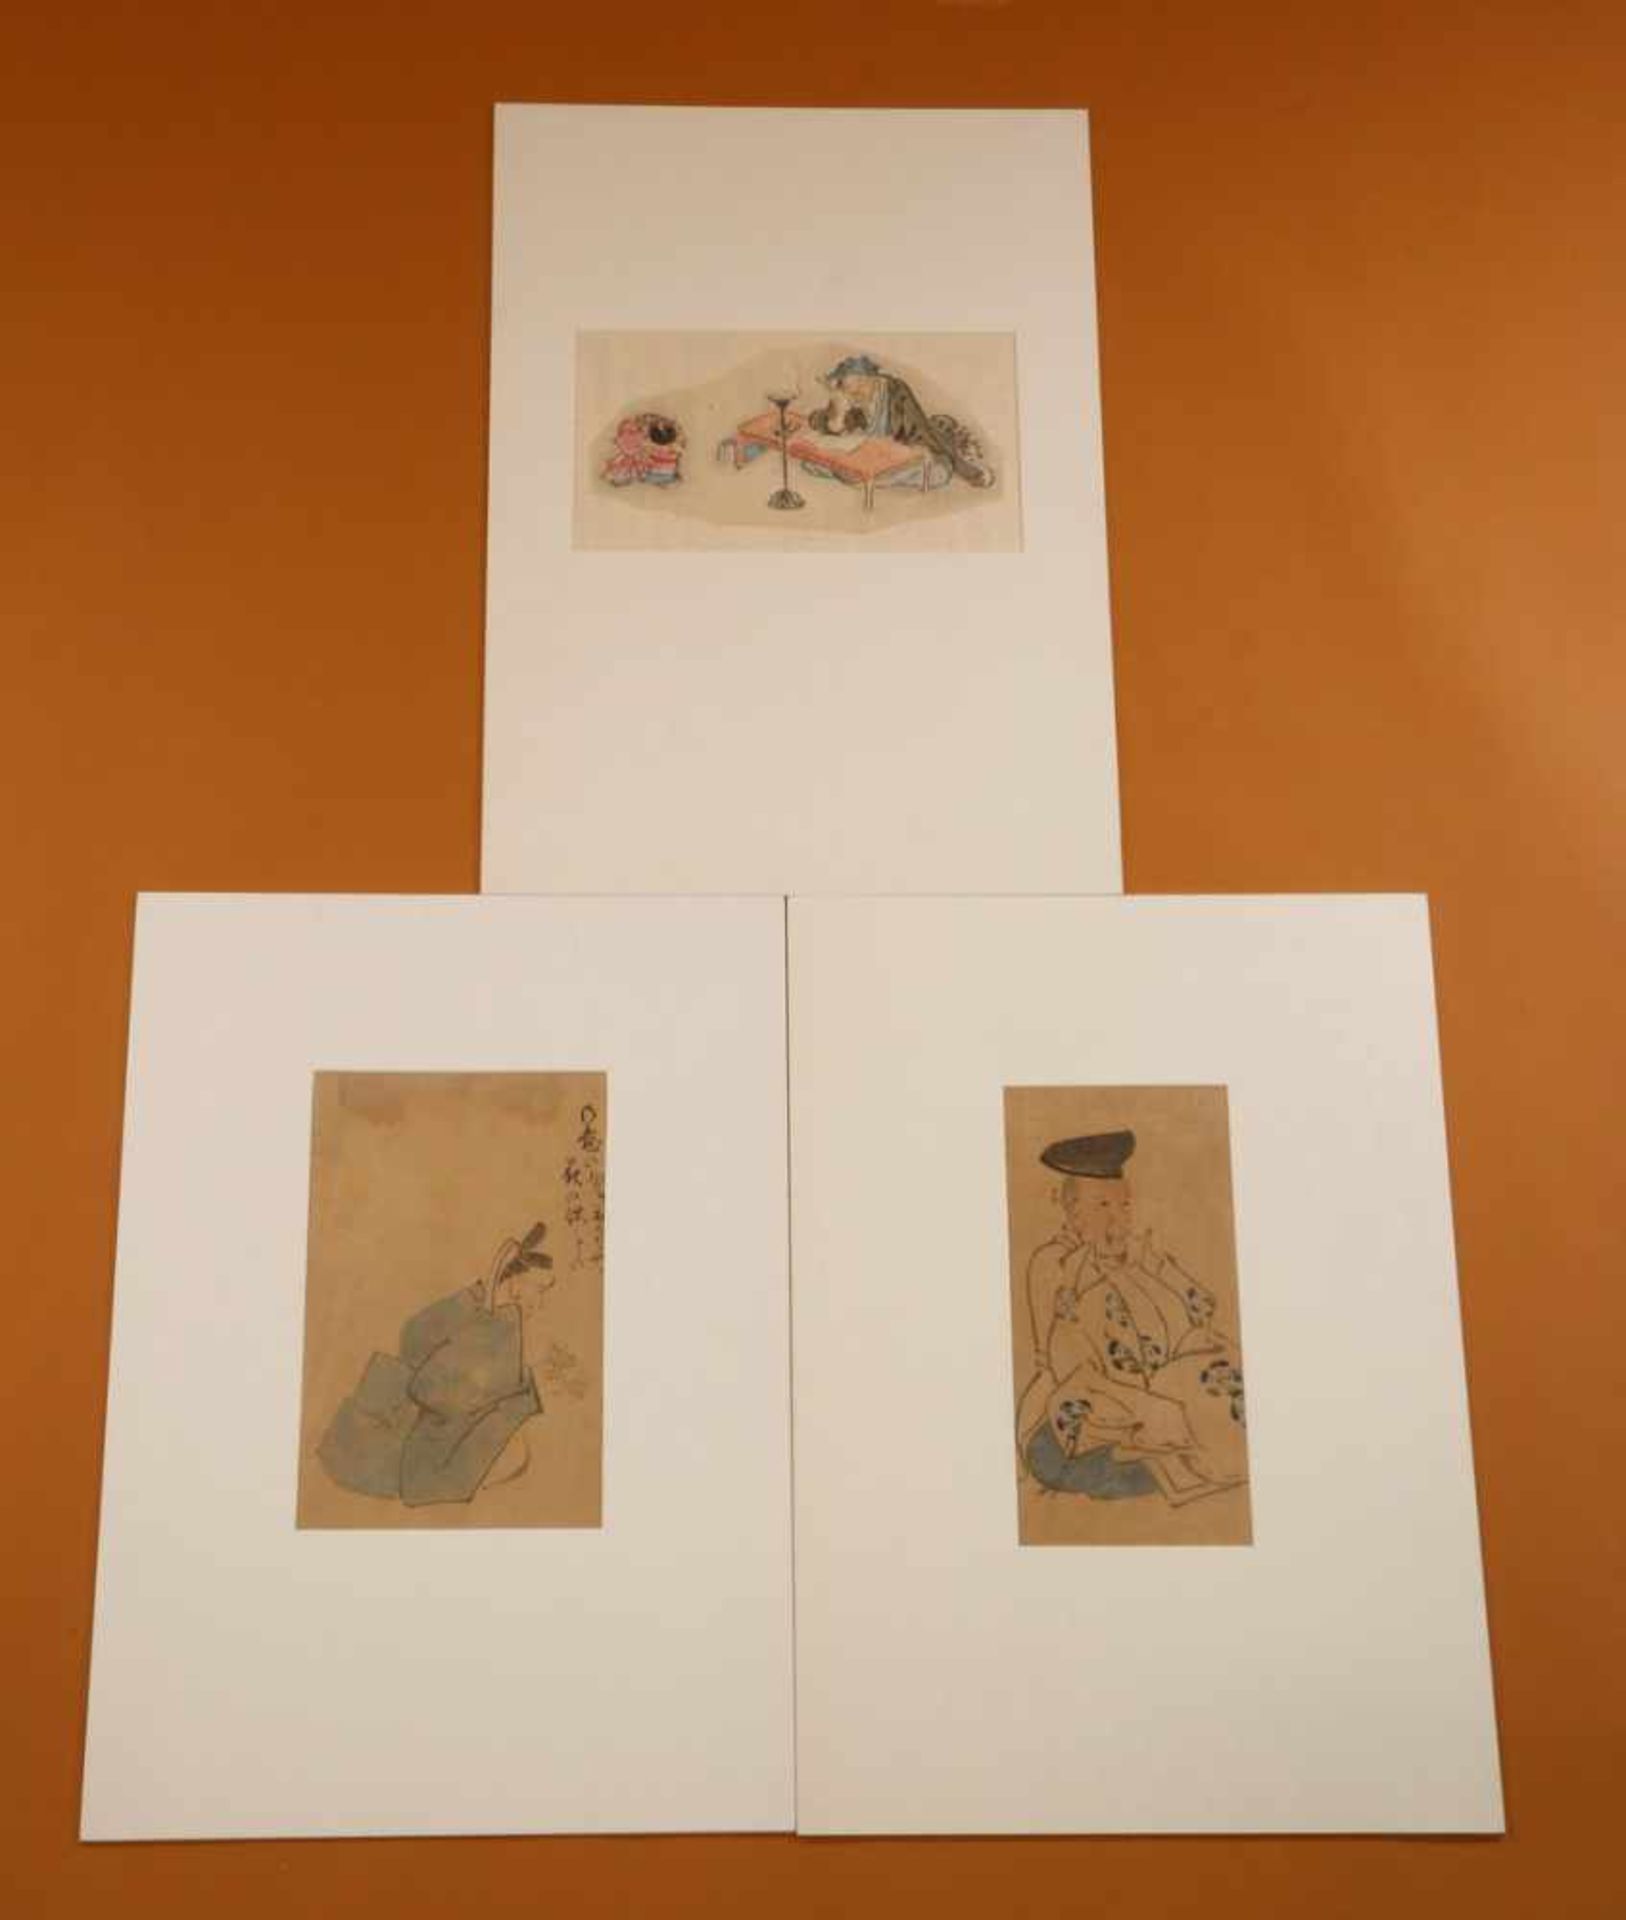 Japan, getekende boekillustraties, hoogwaardigheidsbekleders,landschappen, 19e eeuw, in passe-